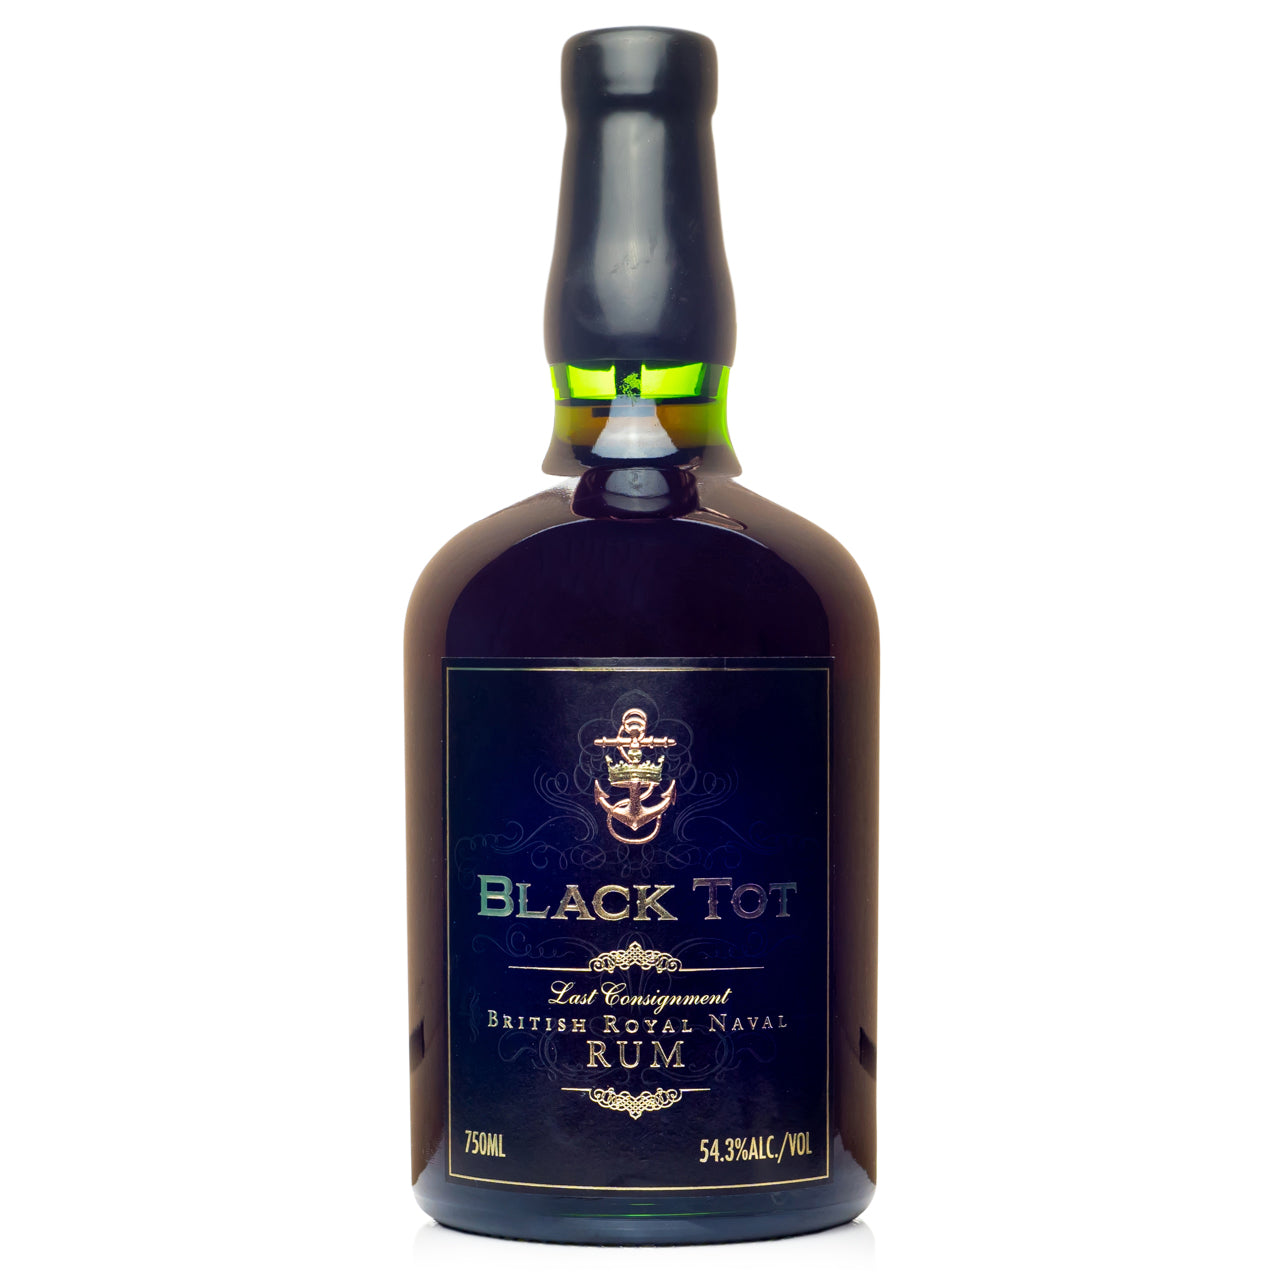 Black Tot Last Consignment British Royal Naval Rum